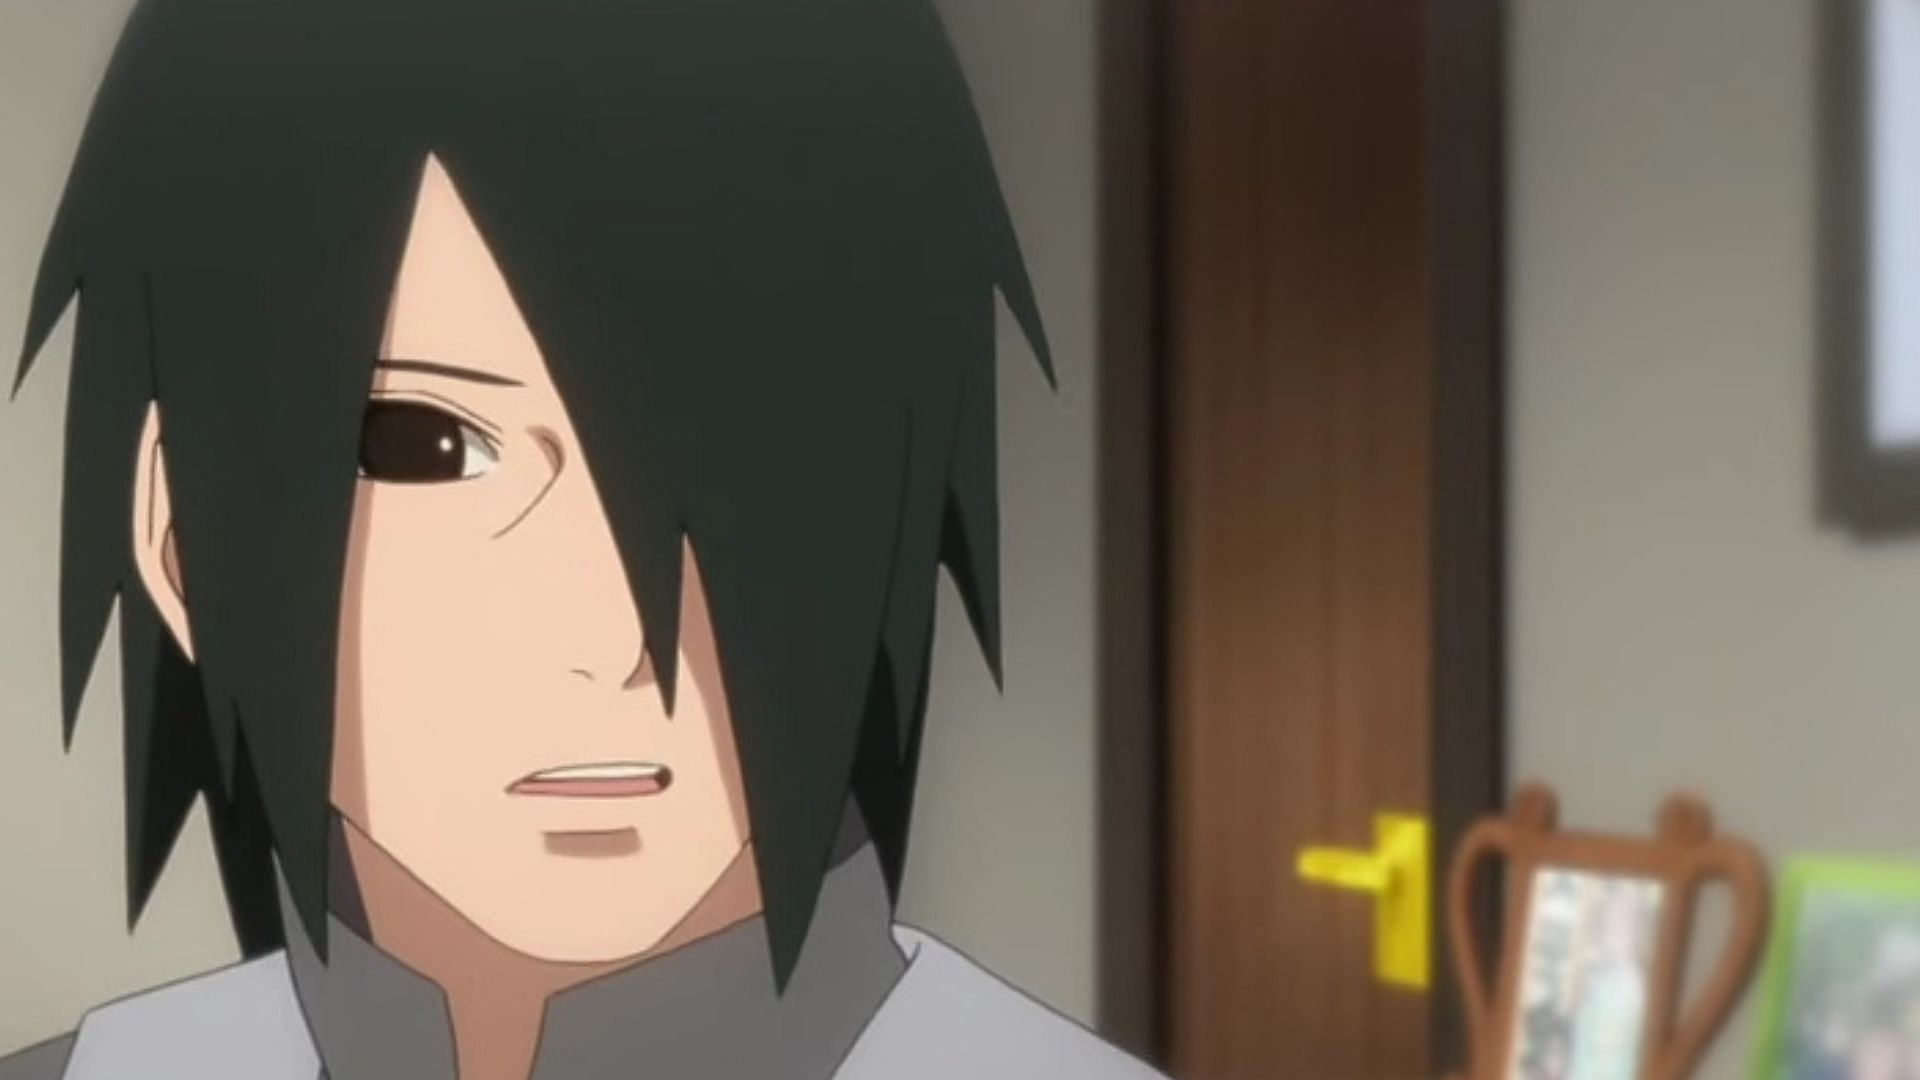 Sasuke (image via Pierrot)